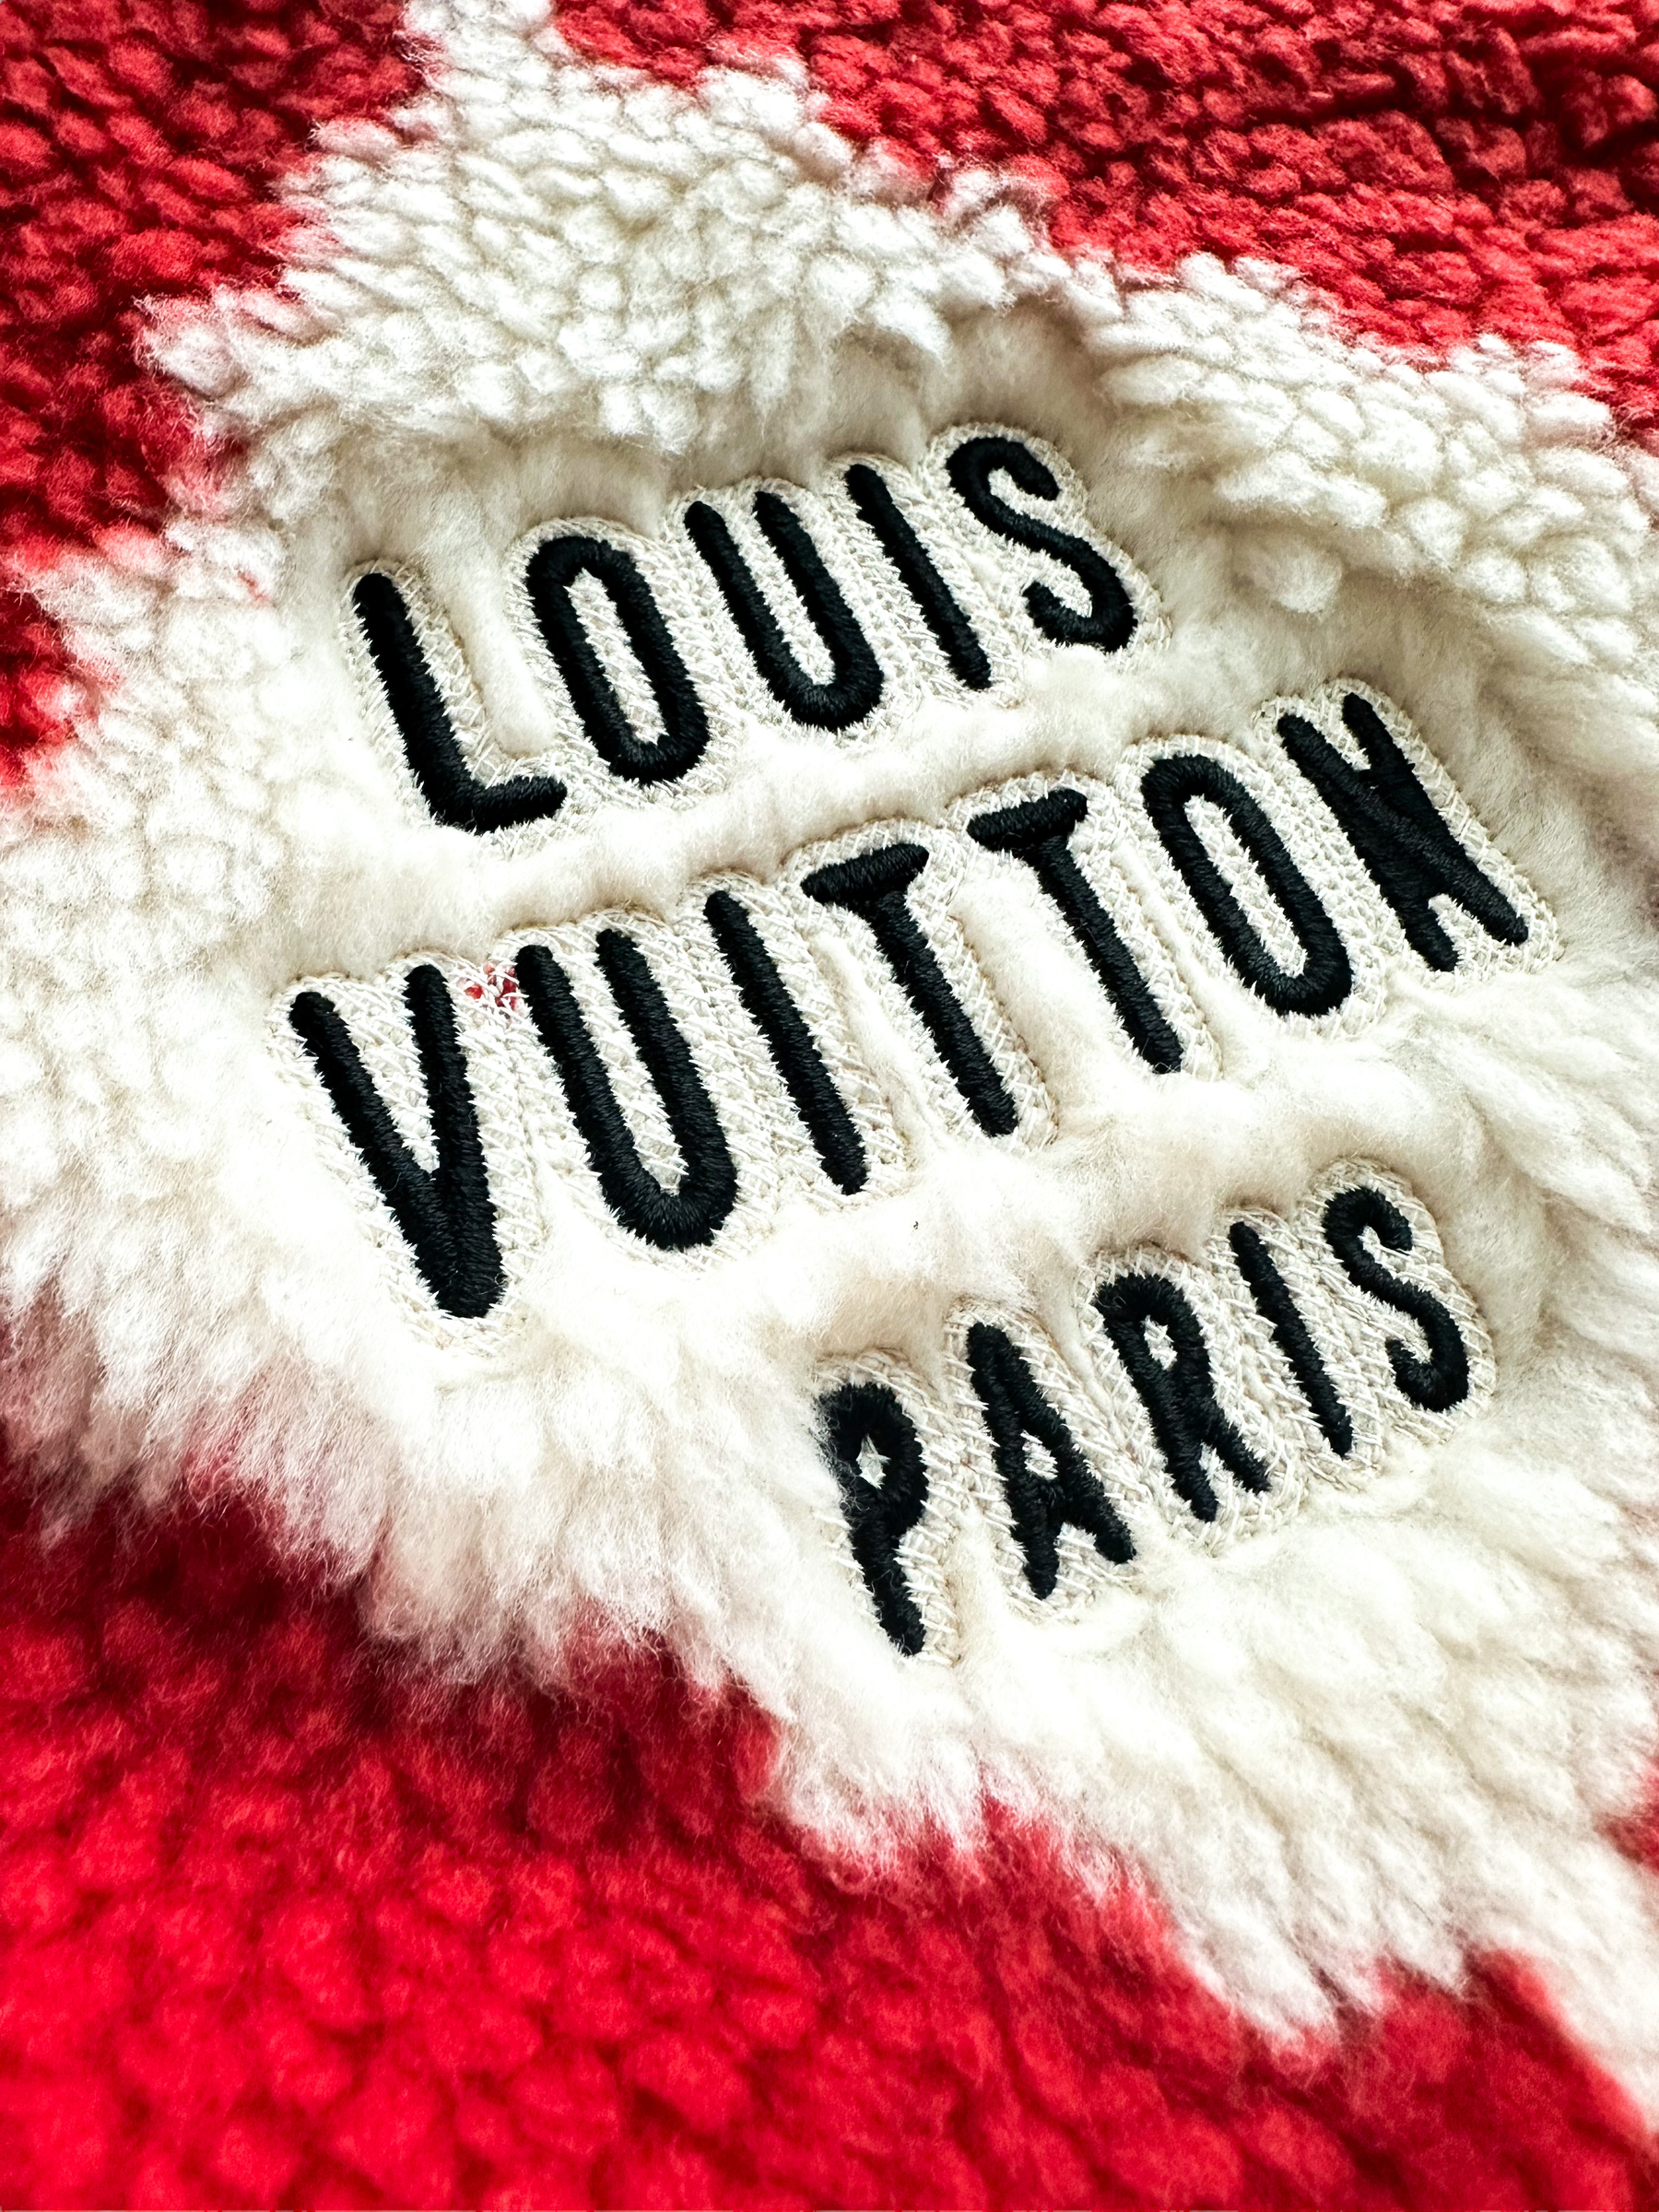 Louis Vuitton Plaid Print Utility Jacket - Orange Outerwear, Clothing -  LOU591963